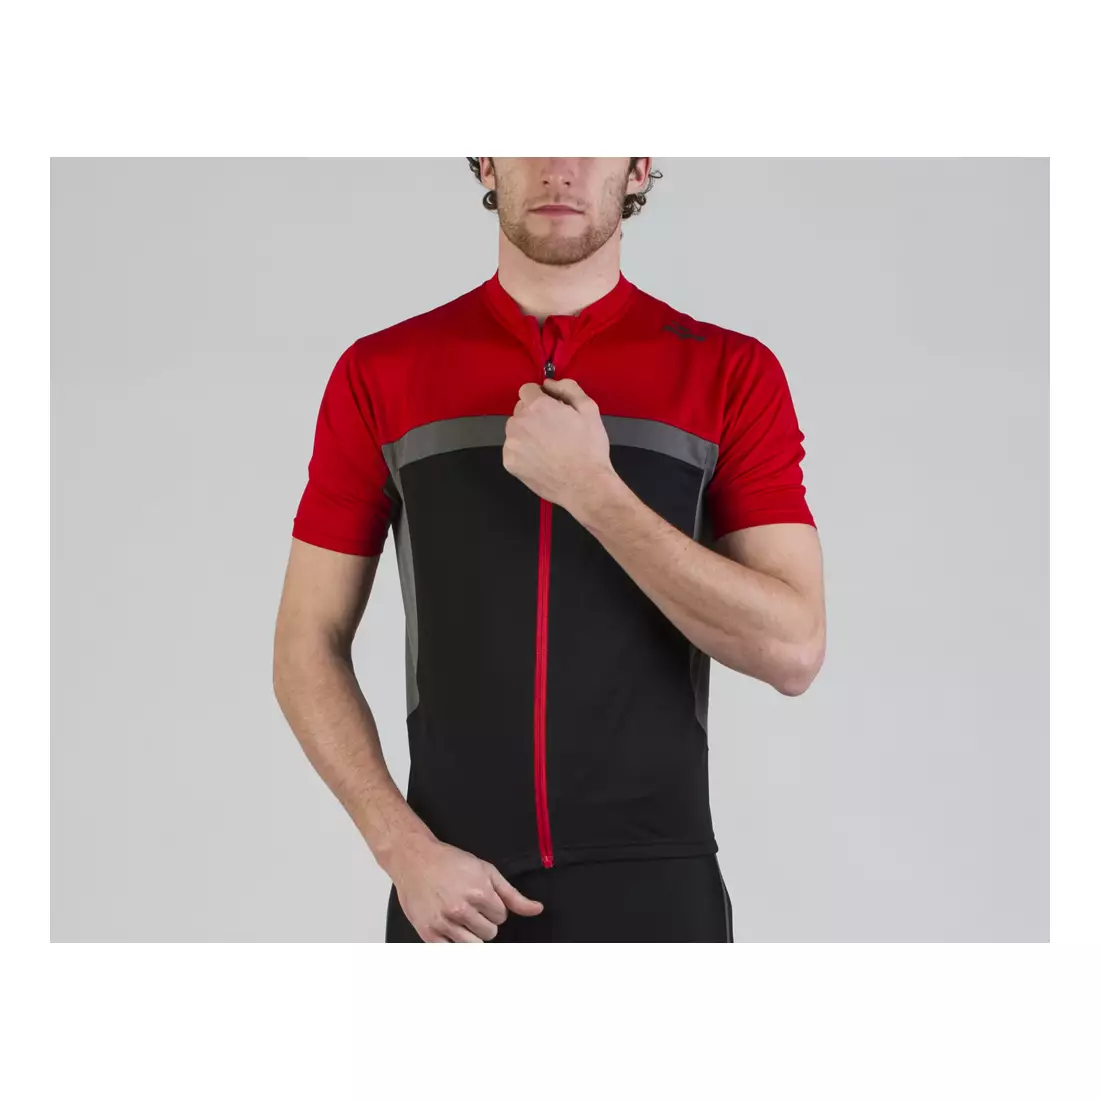 Tricou pentru ciclism bărbați ROGELLI BIKE MANTUA 2.0, 001.068 - negru-gri-fluor